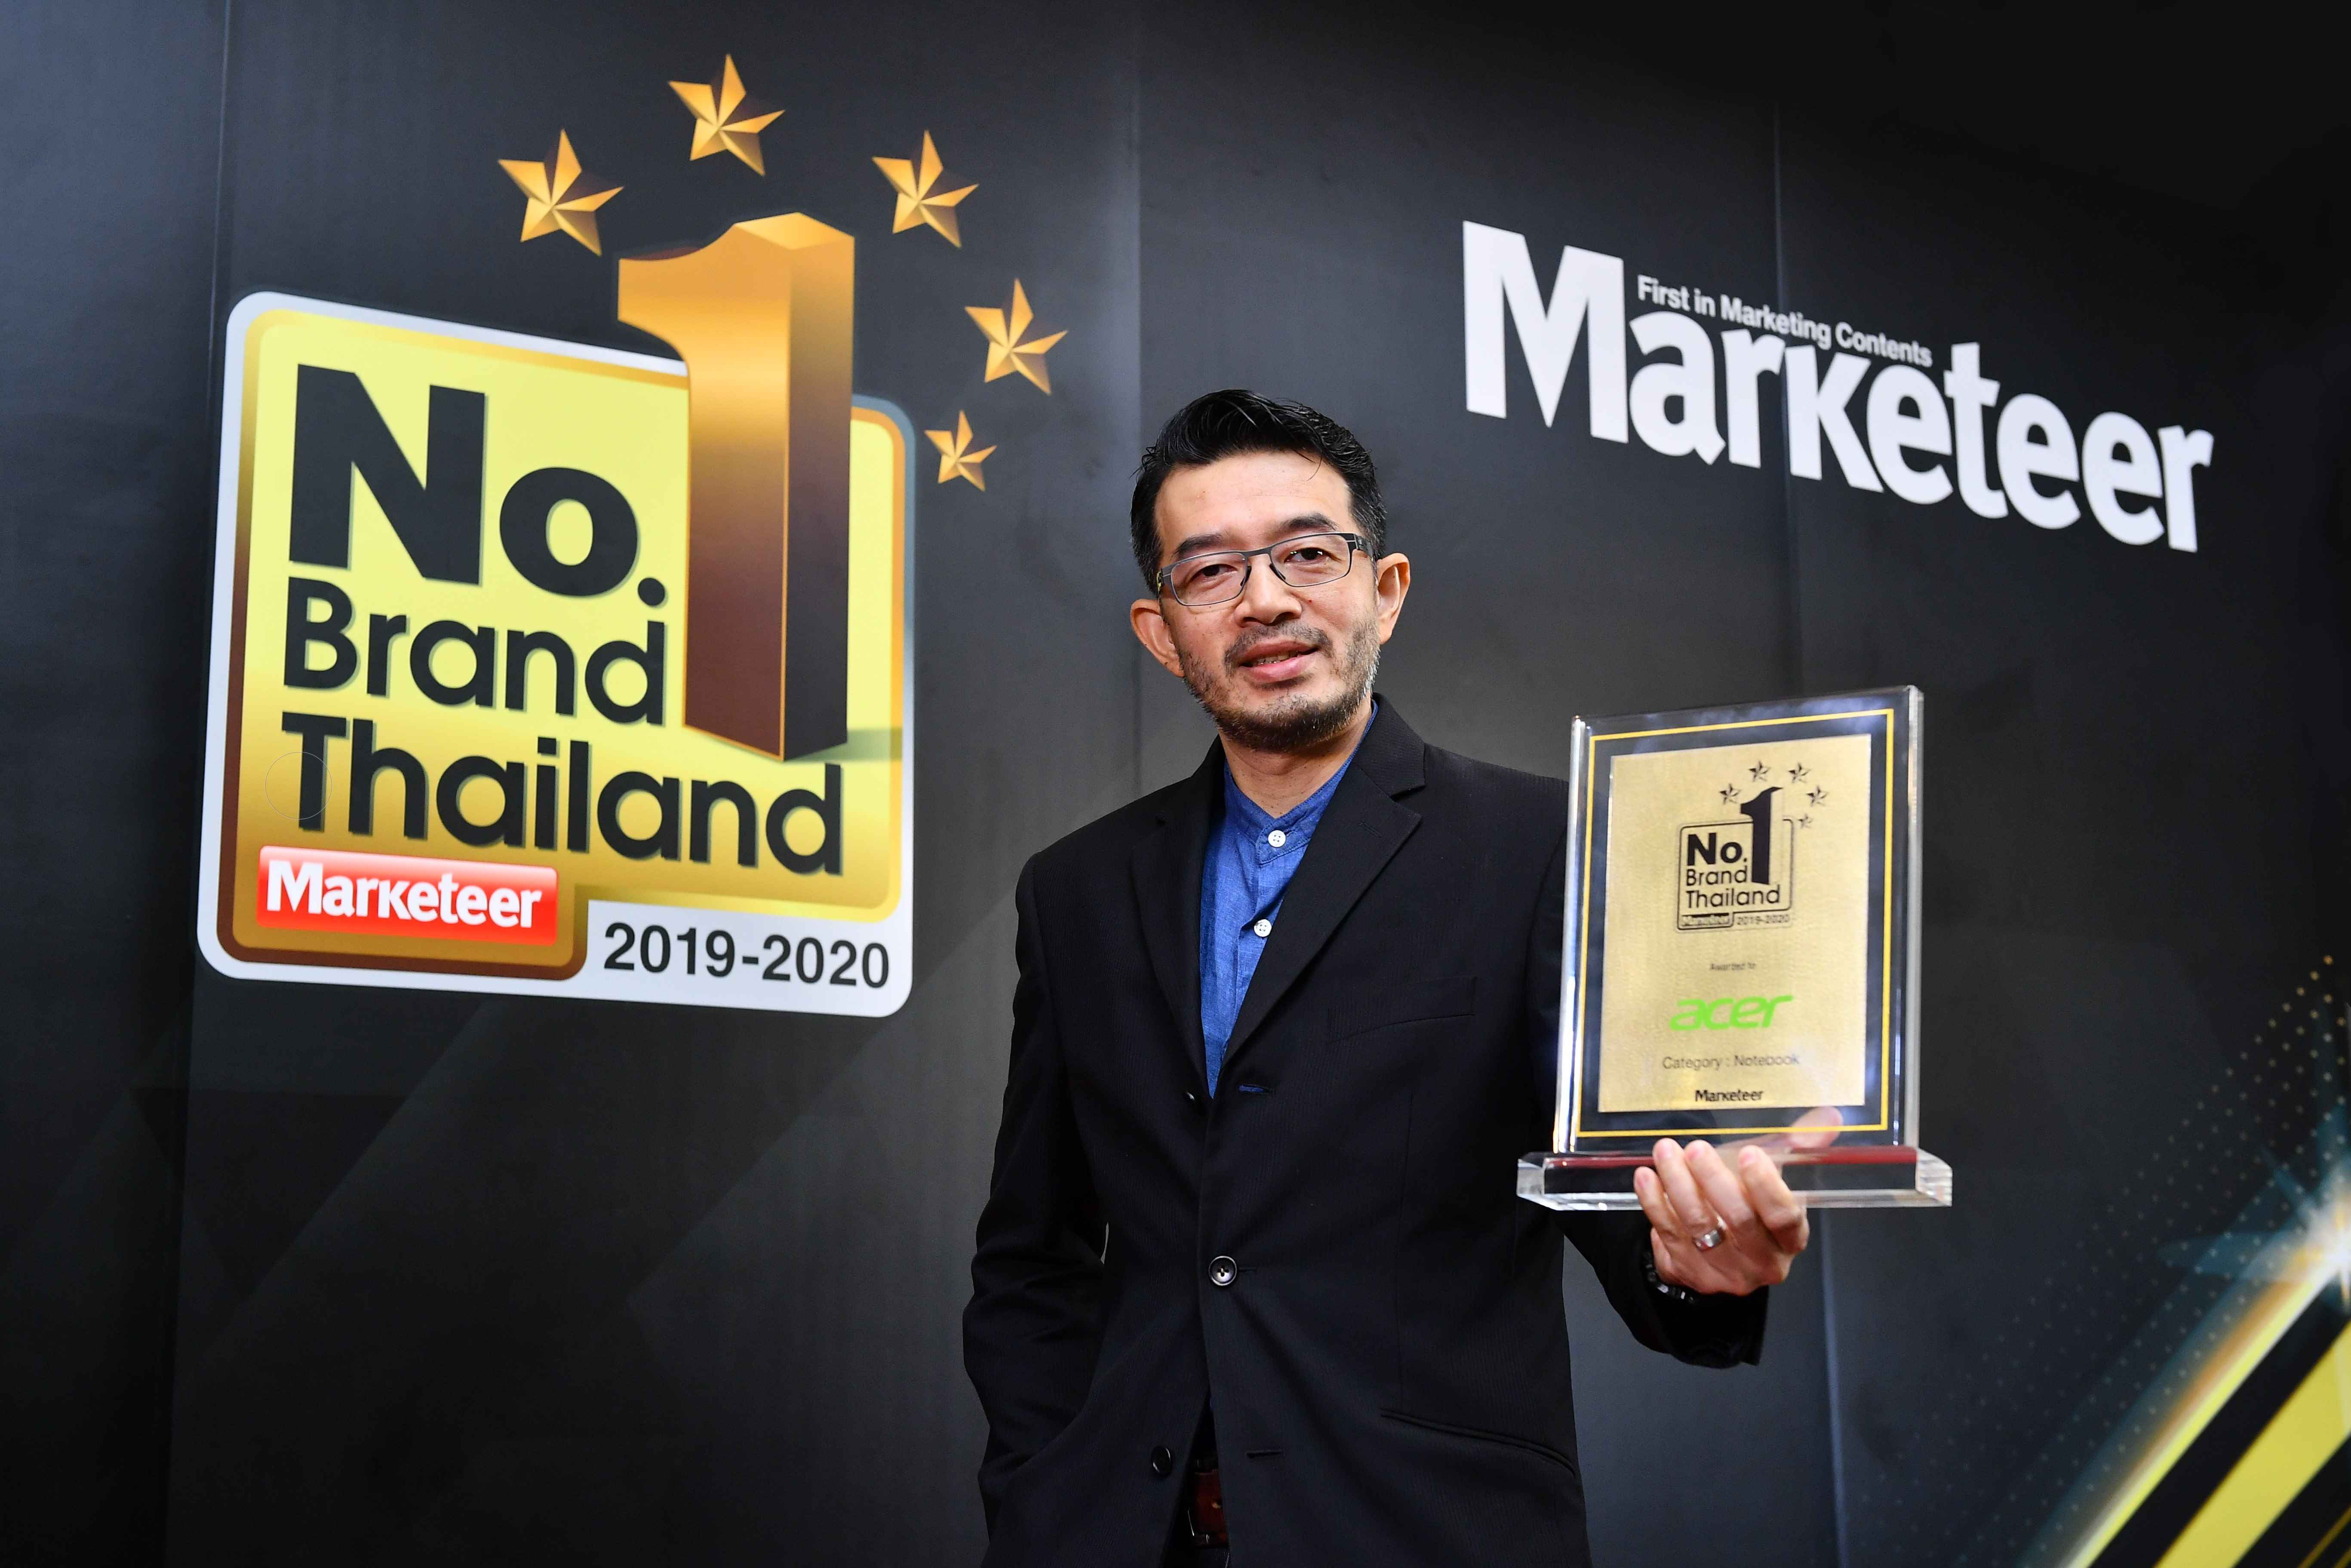 อีกครั้งกับรางวัลแห่งความภาคภูมิใจ ที่ได้รับติดต่อกันเป็นปีที่ 9 เอเซอร์ คว้าแบรนด์ยอดนิยมอันดับ 1 ของประเทศไทย